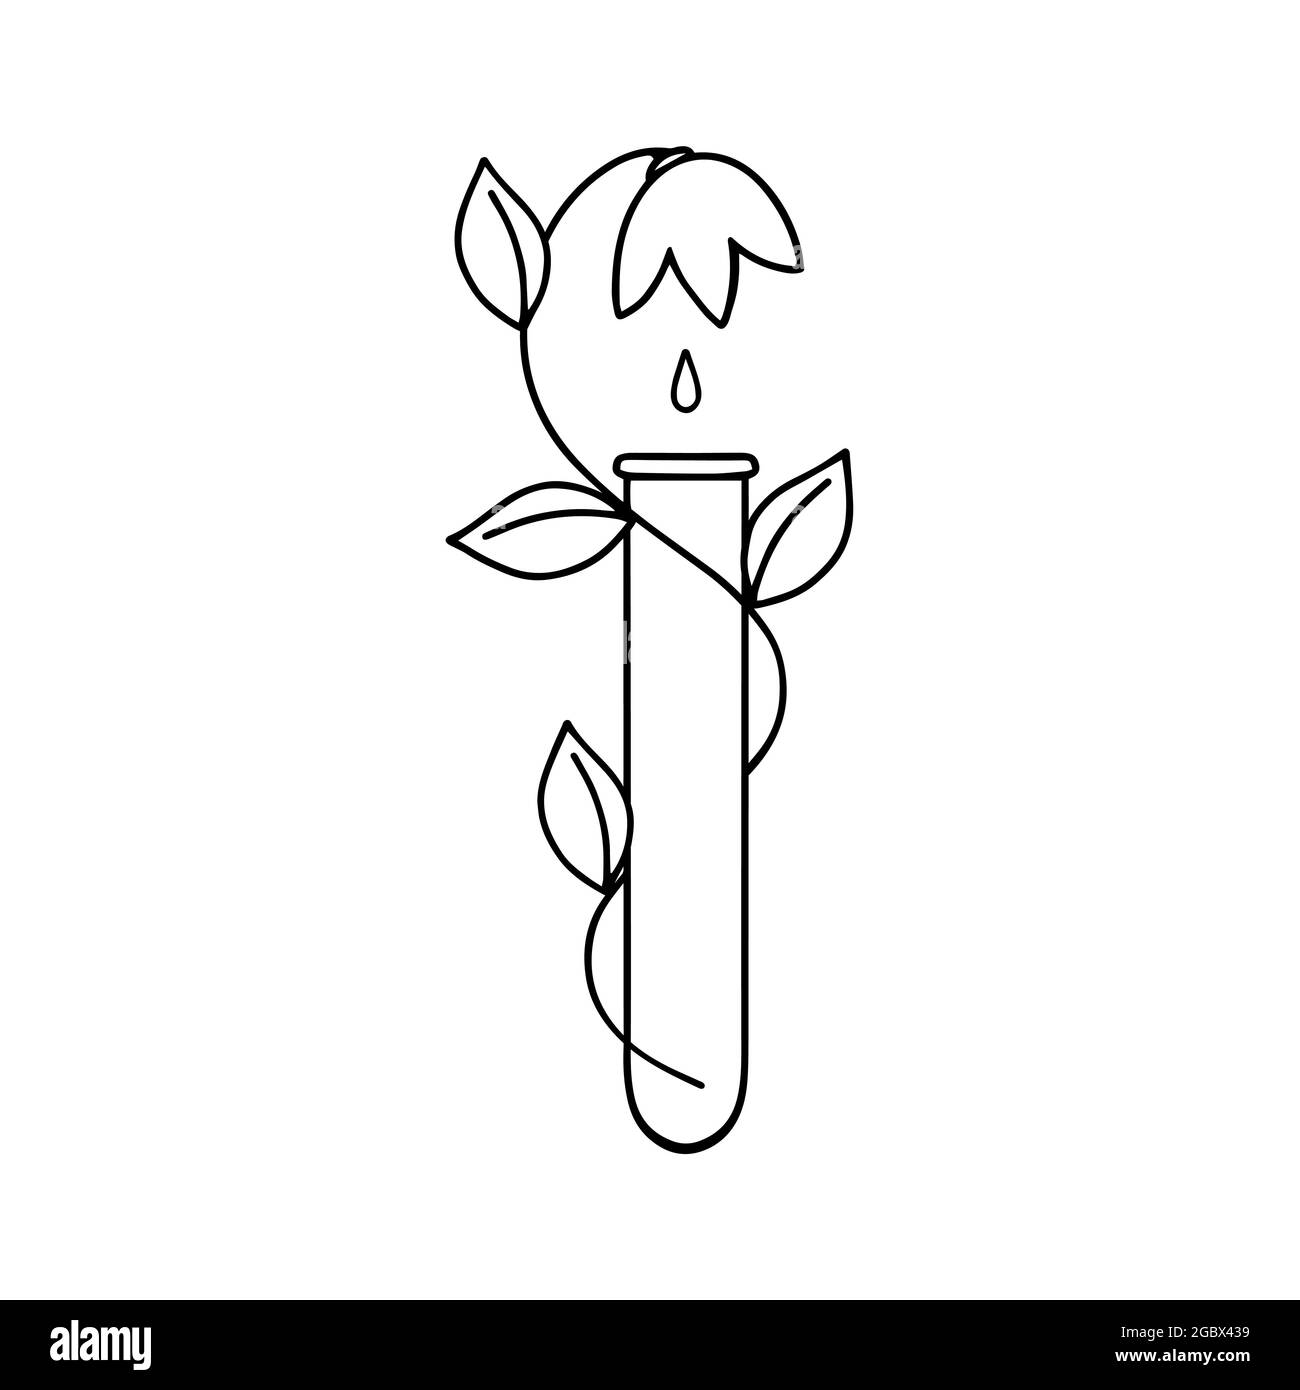 Alternative Medizin. Abbildung eines Laborröhrchens mit einer Pflanze im Stil von Doodles im Vektorformat, geeignet für den Einsatz auf dem Inter Stock Vektor